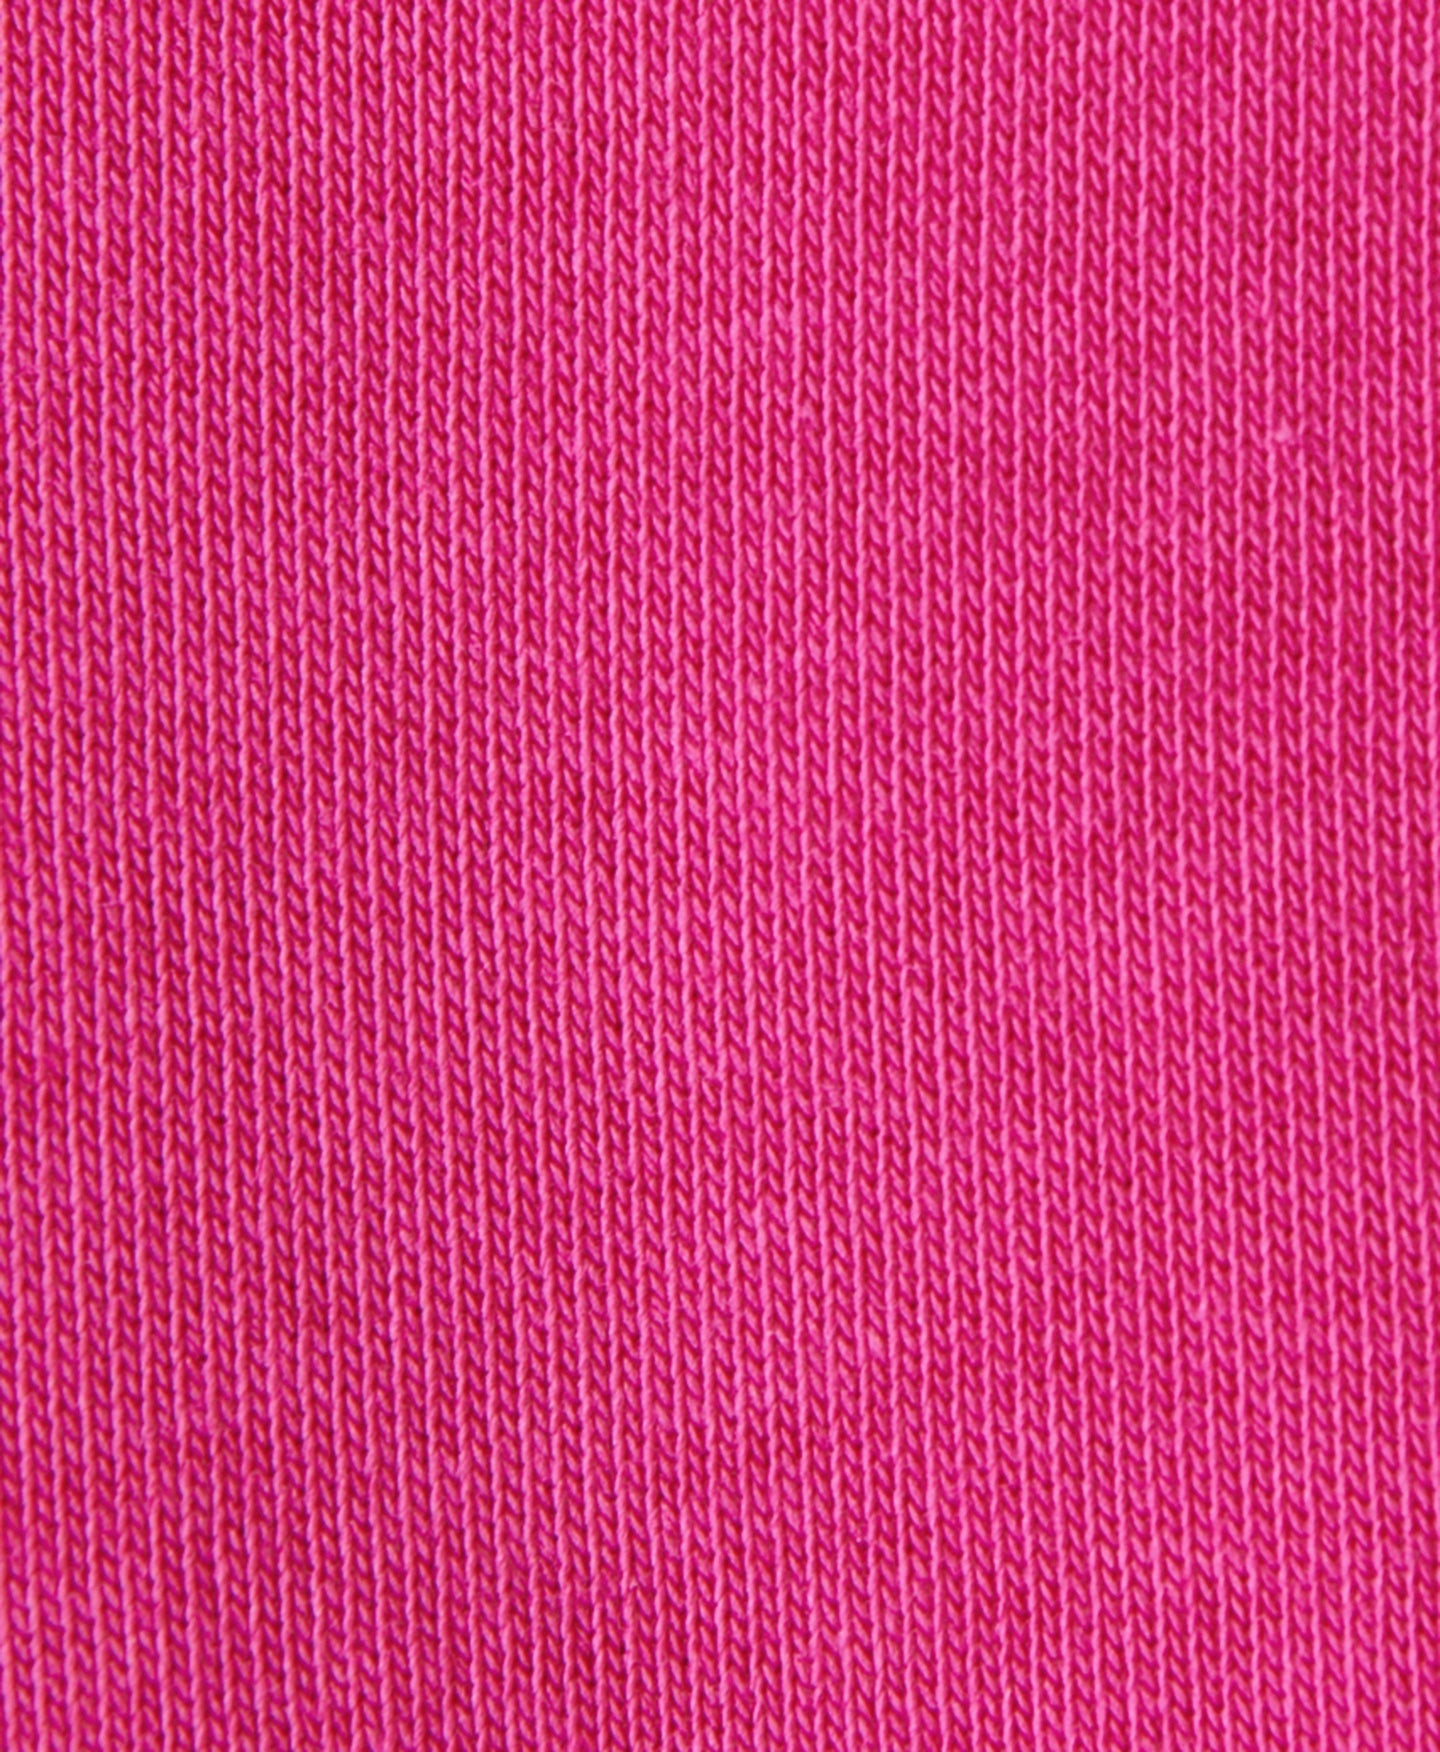 After Class Hoody Sb9586 Beet-Pink